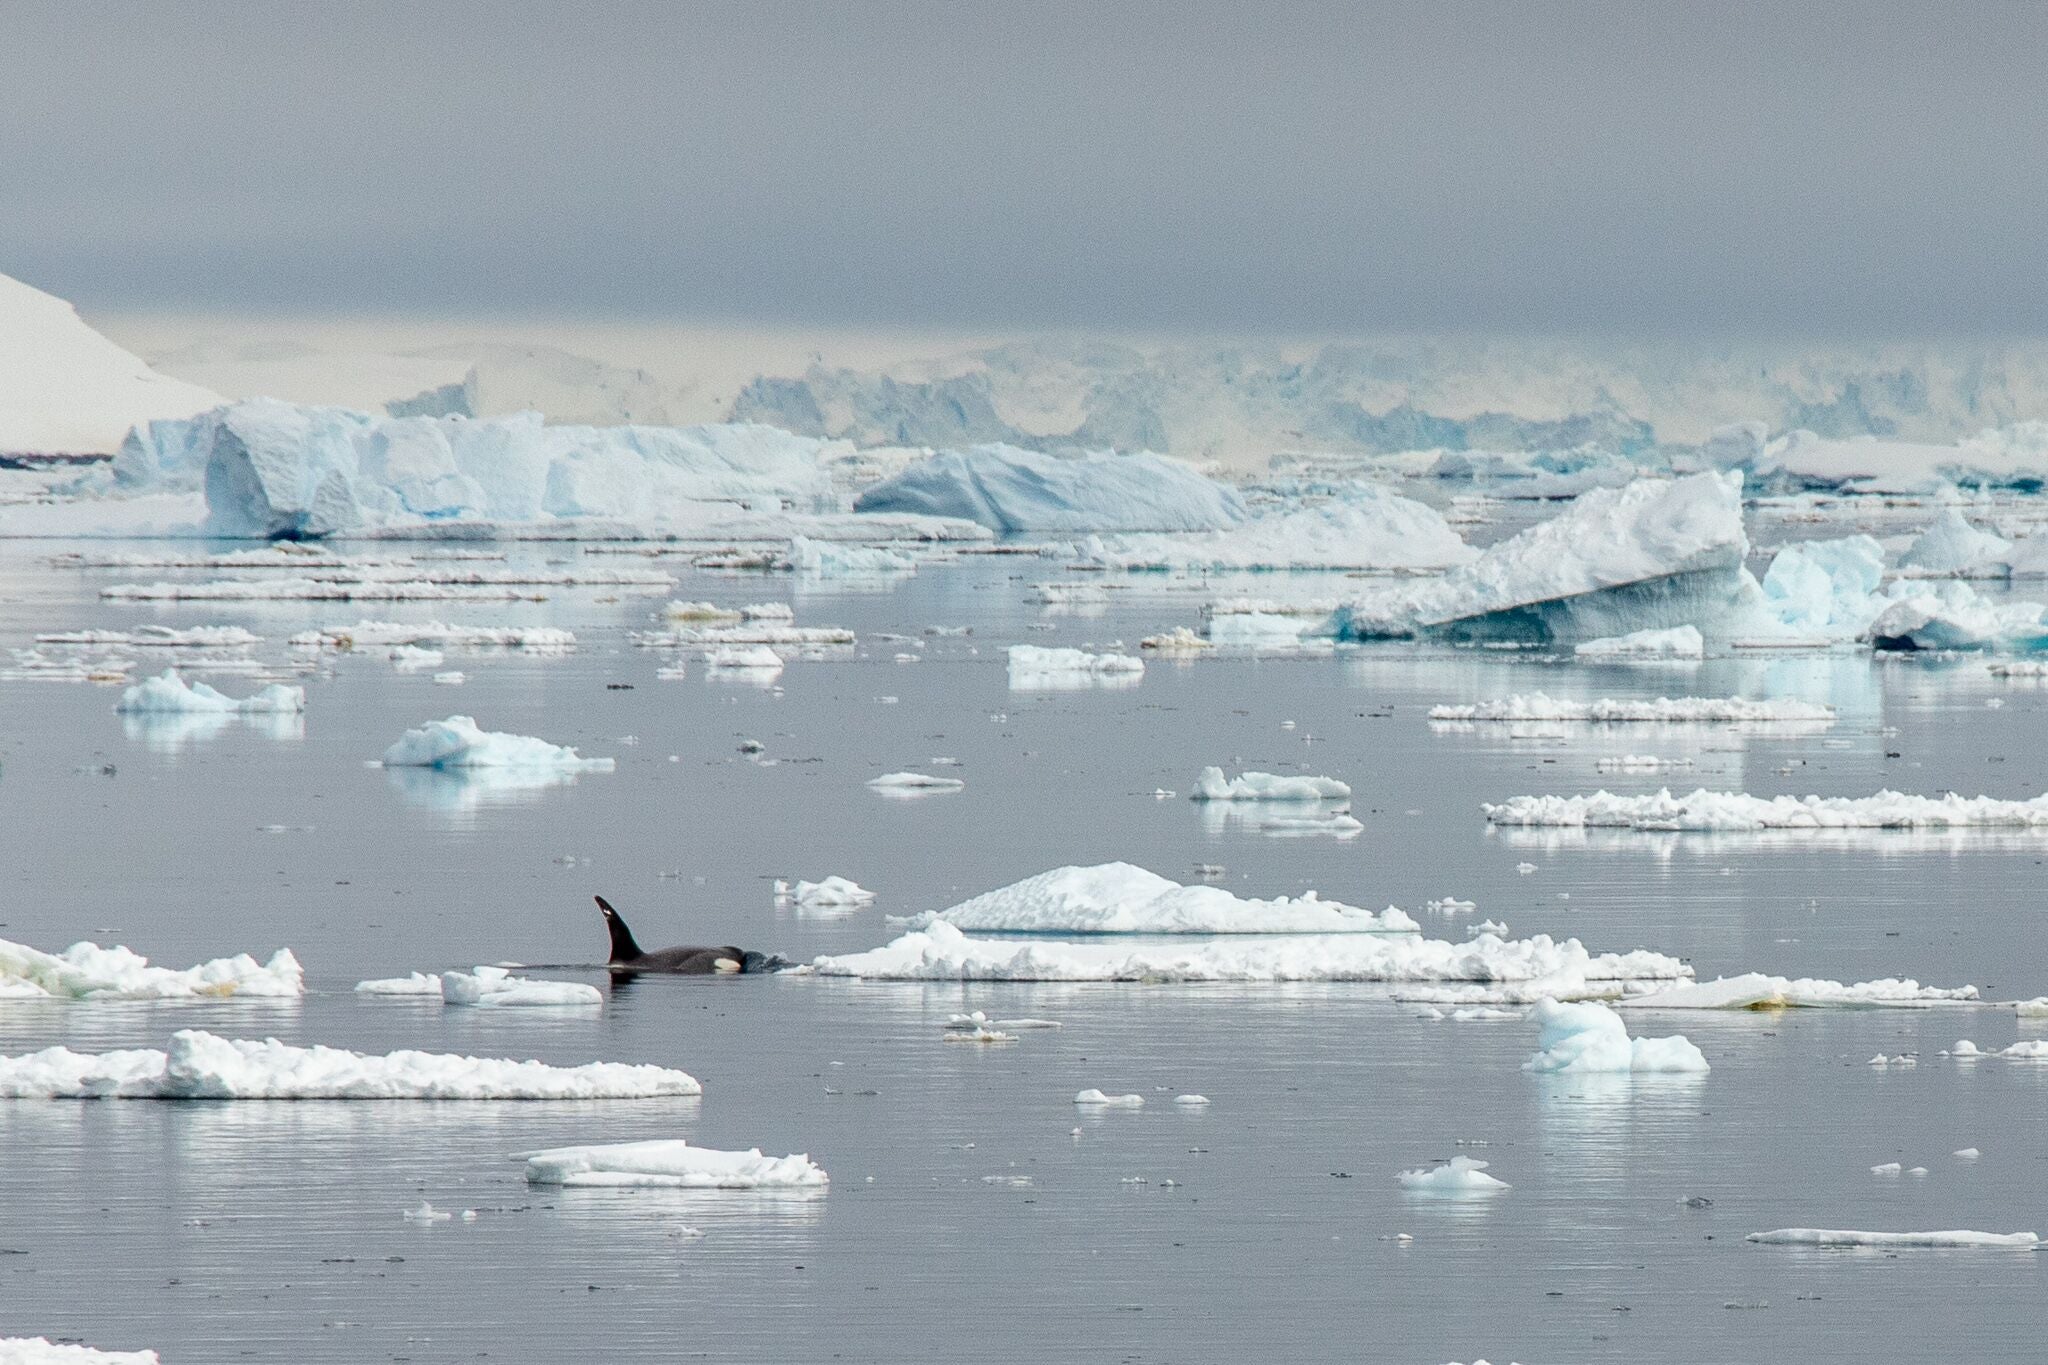 Orca swiming among small icebergs